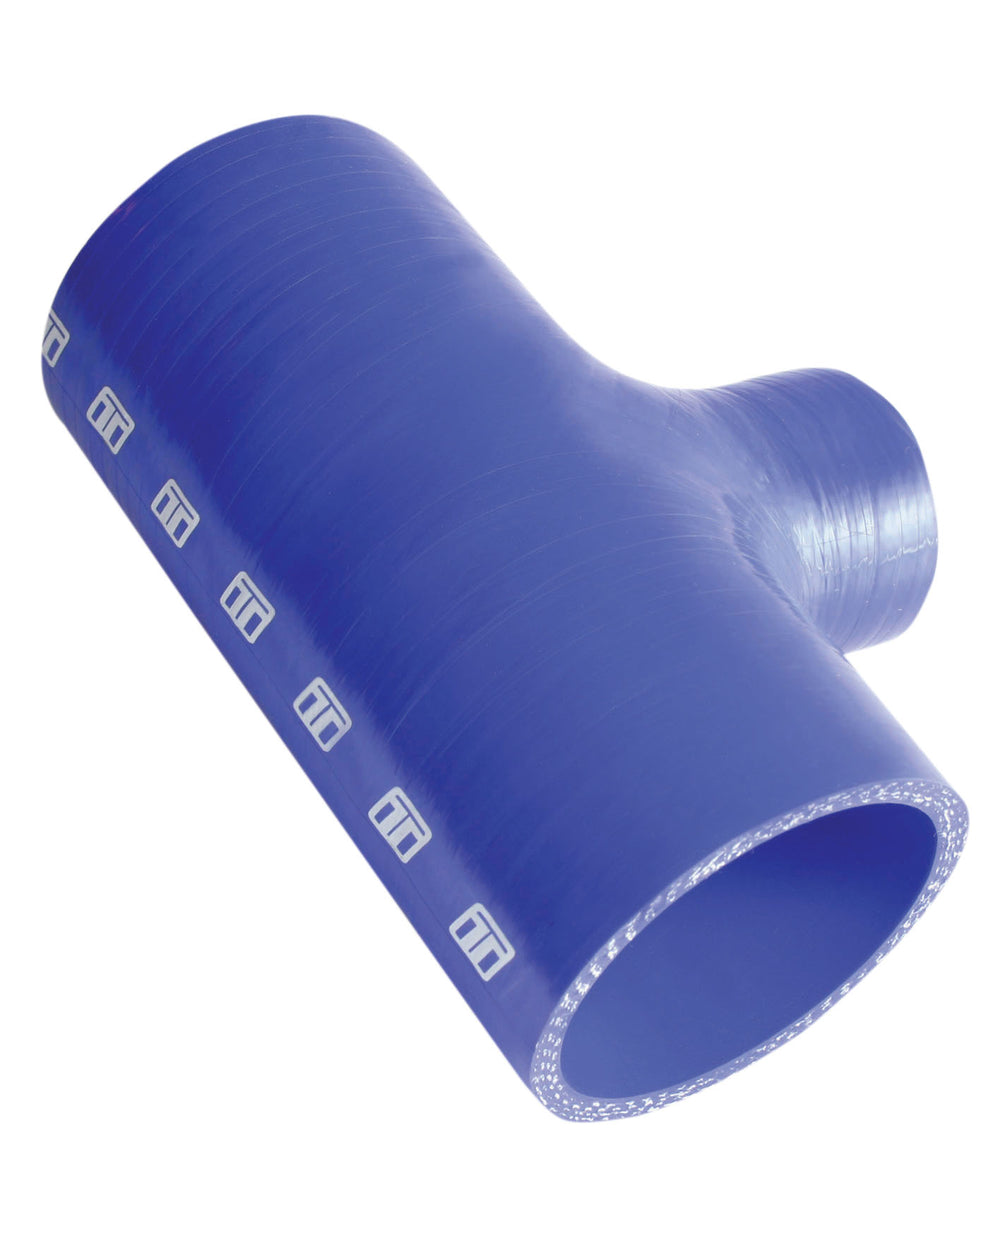 Turbosmart Intercooler Hose Kit (Hose Tee 2.00" ID 1.5" spout - Blue)